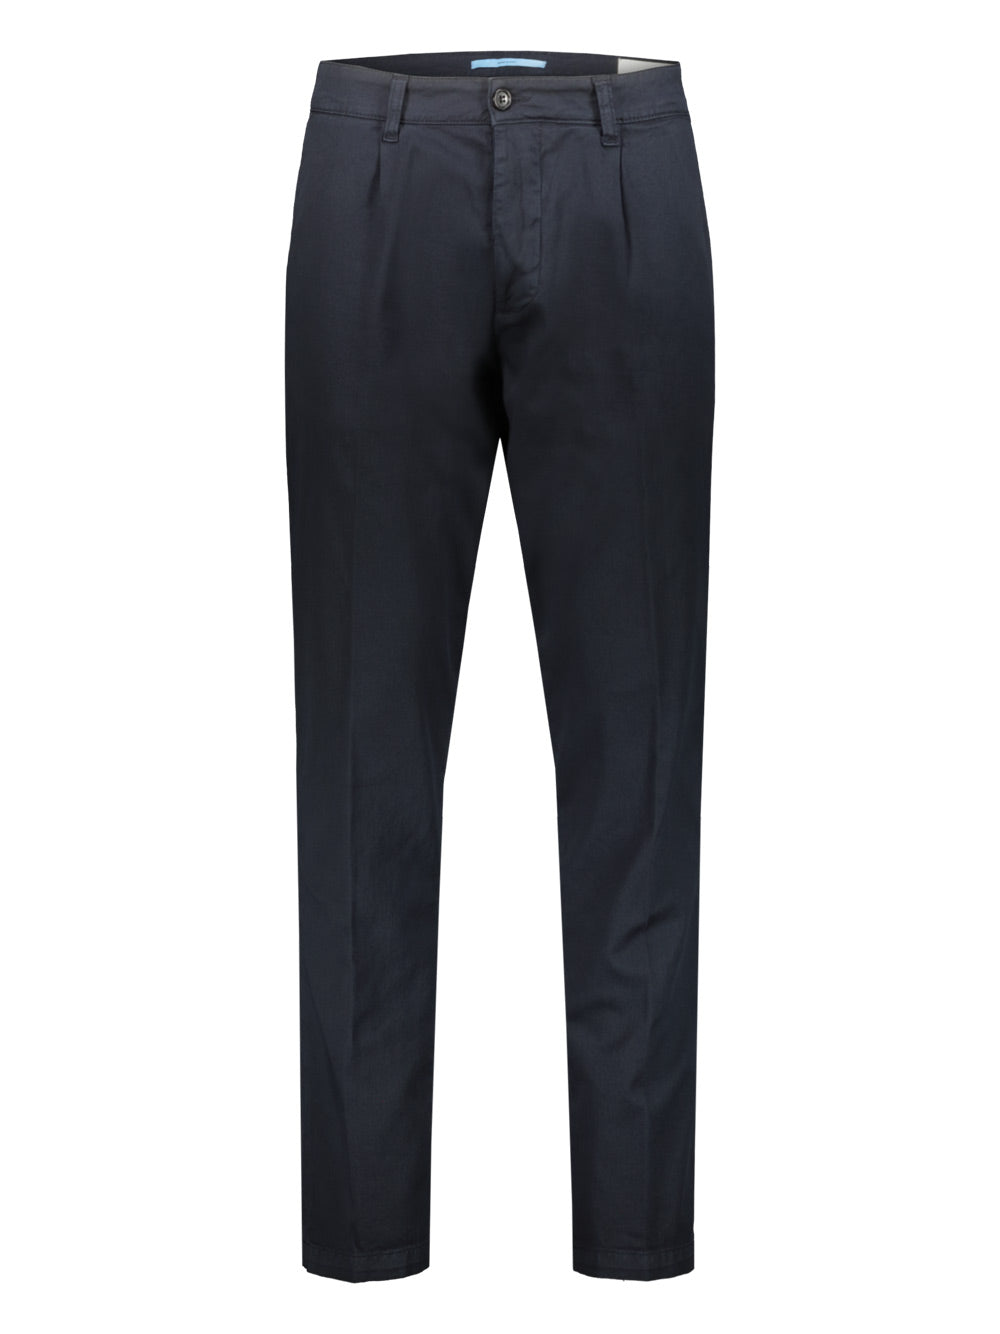 Pantalone Uomo Haikure in cotone con tasca a filo, color blu- Visione frontale